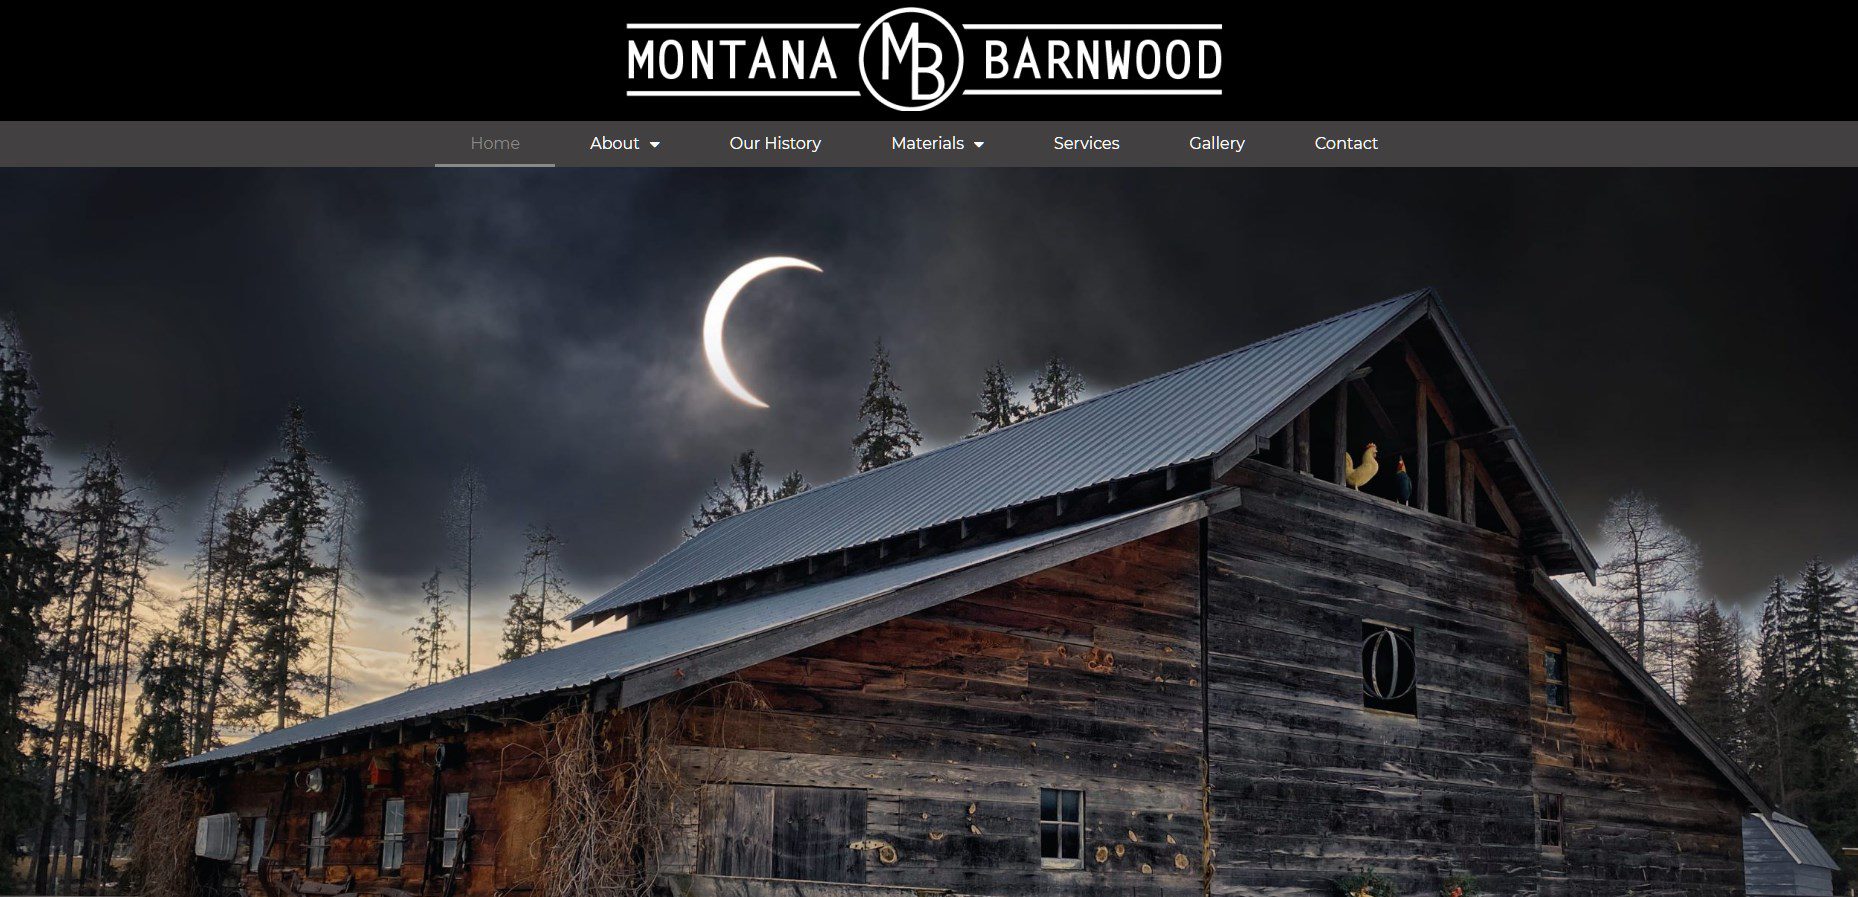 Montana Barnwood: Home Page